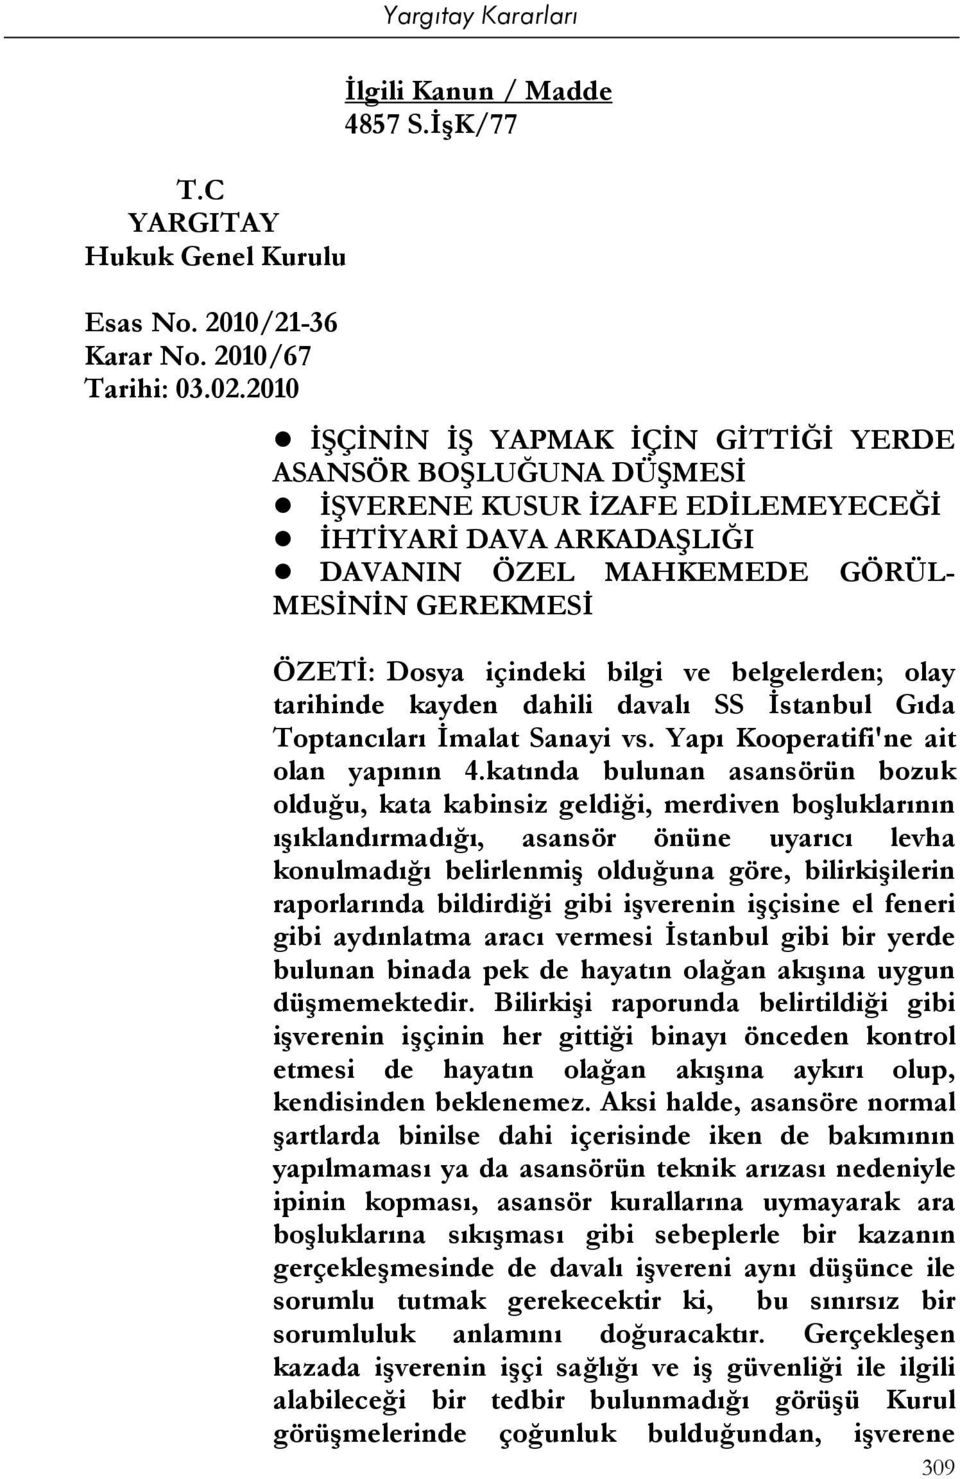 içindeki bilgi ve belgelerden; olay tarihinde kayden dahili davalı SS İstanbul Gıda Toptancıları İmalat Sanayi vs. Yapı Kooperatifi'ne ait olan yapının 4.